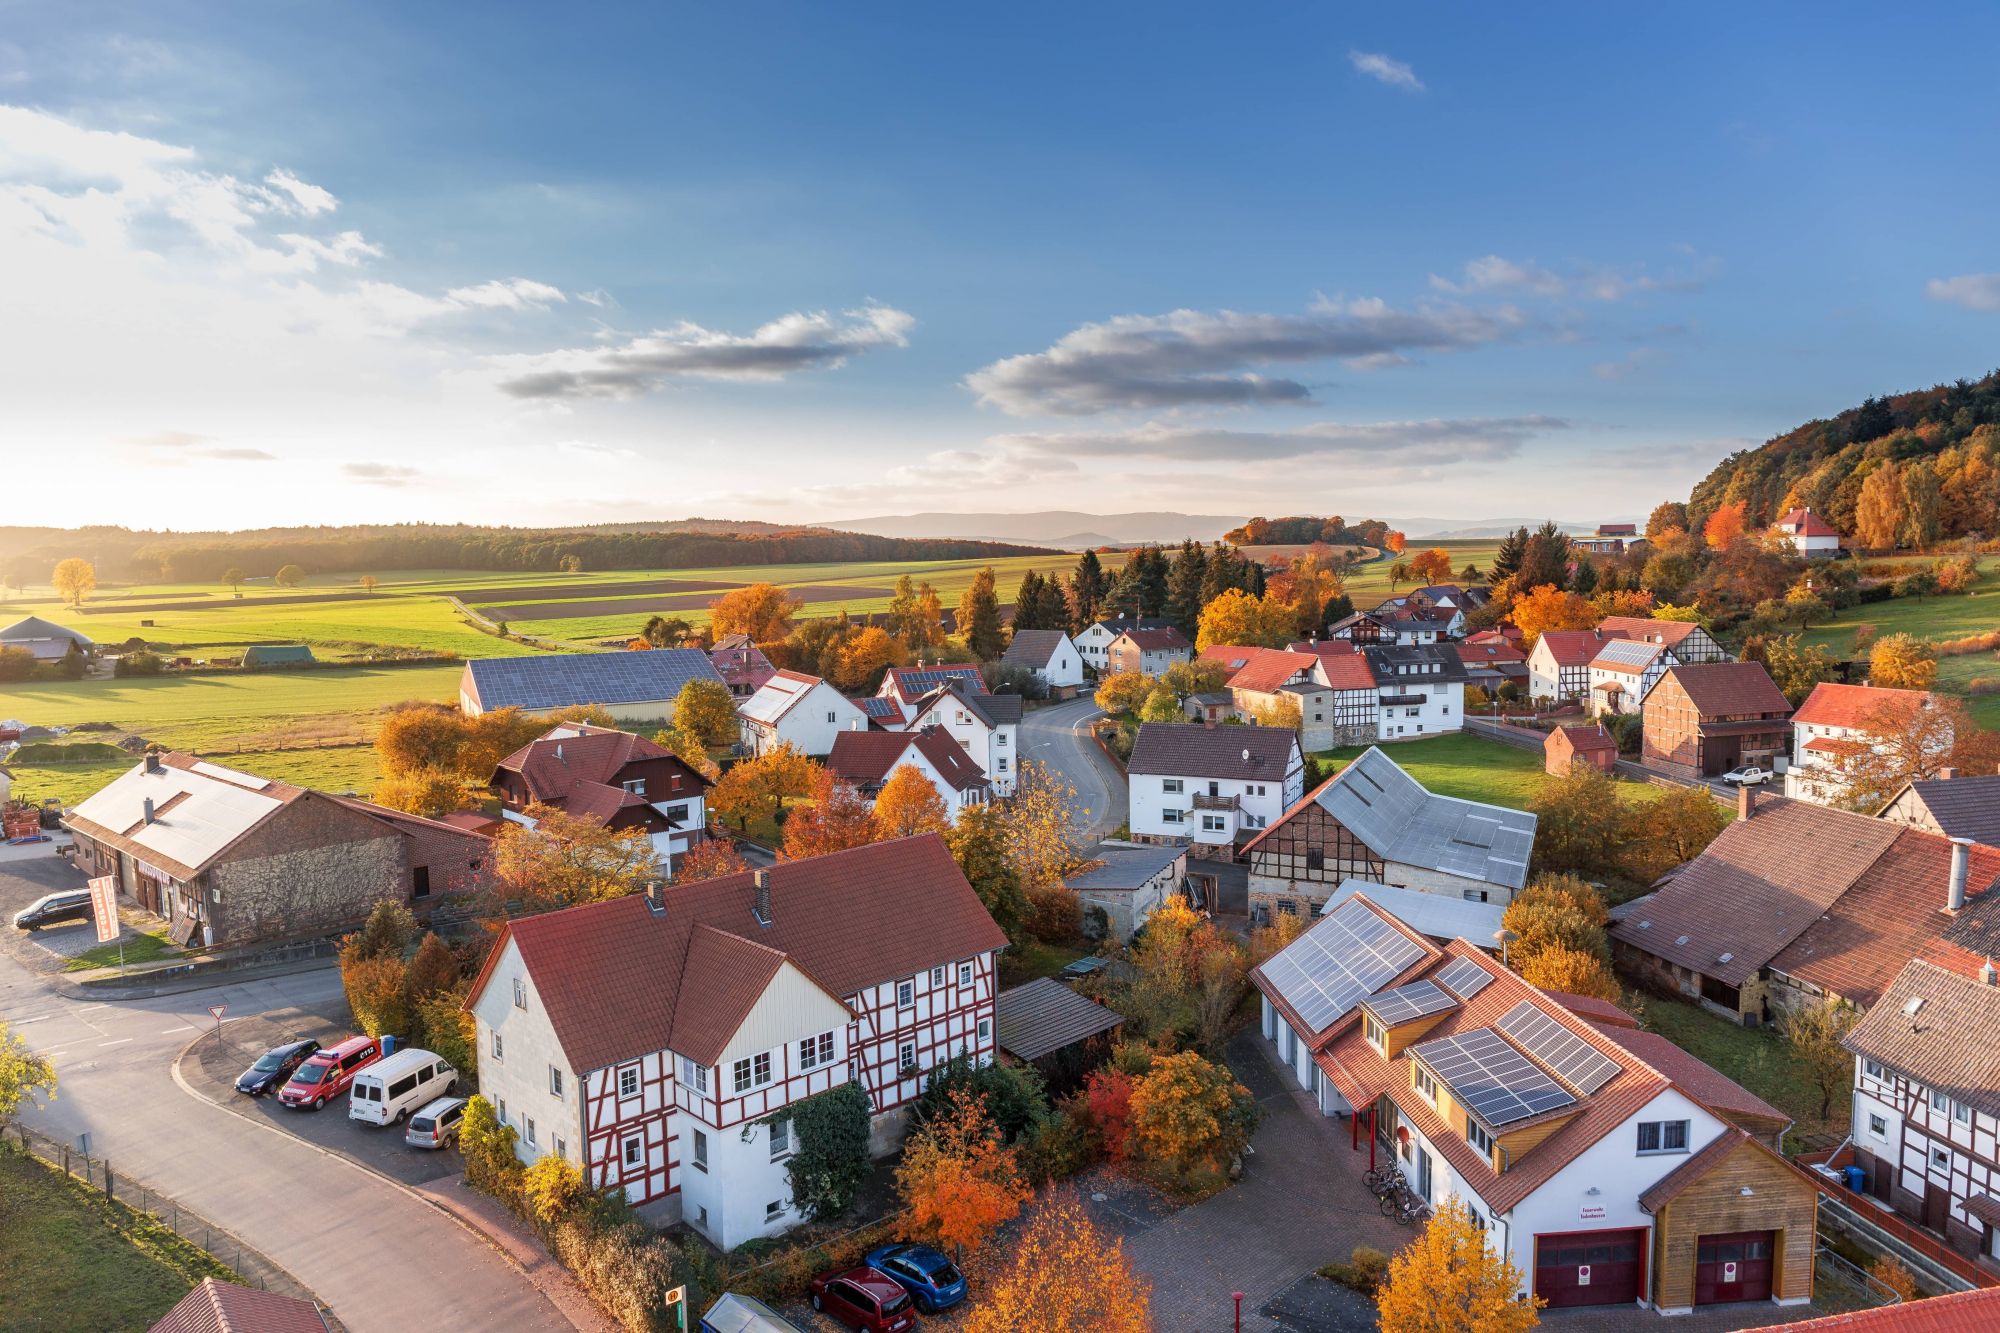 Biens immobiliers Off-market autour de Colmar et Houssen Kaysersberg 2